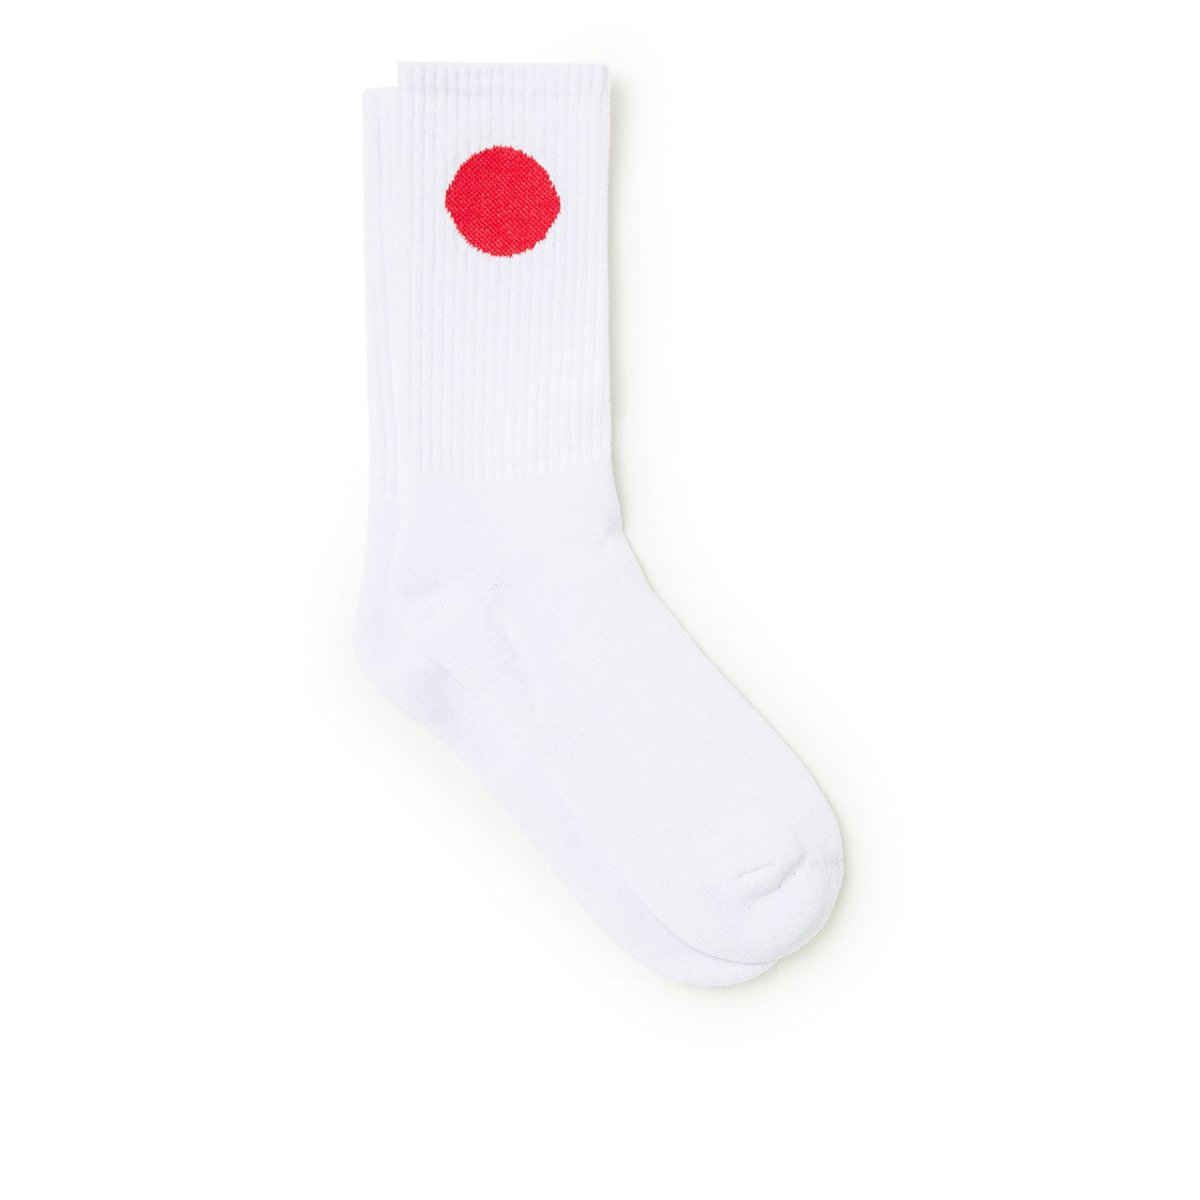 Edwin x Democratique Japanese Sun Socks (Weiss)  - Allike Store